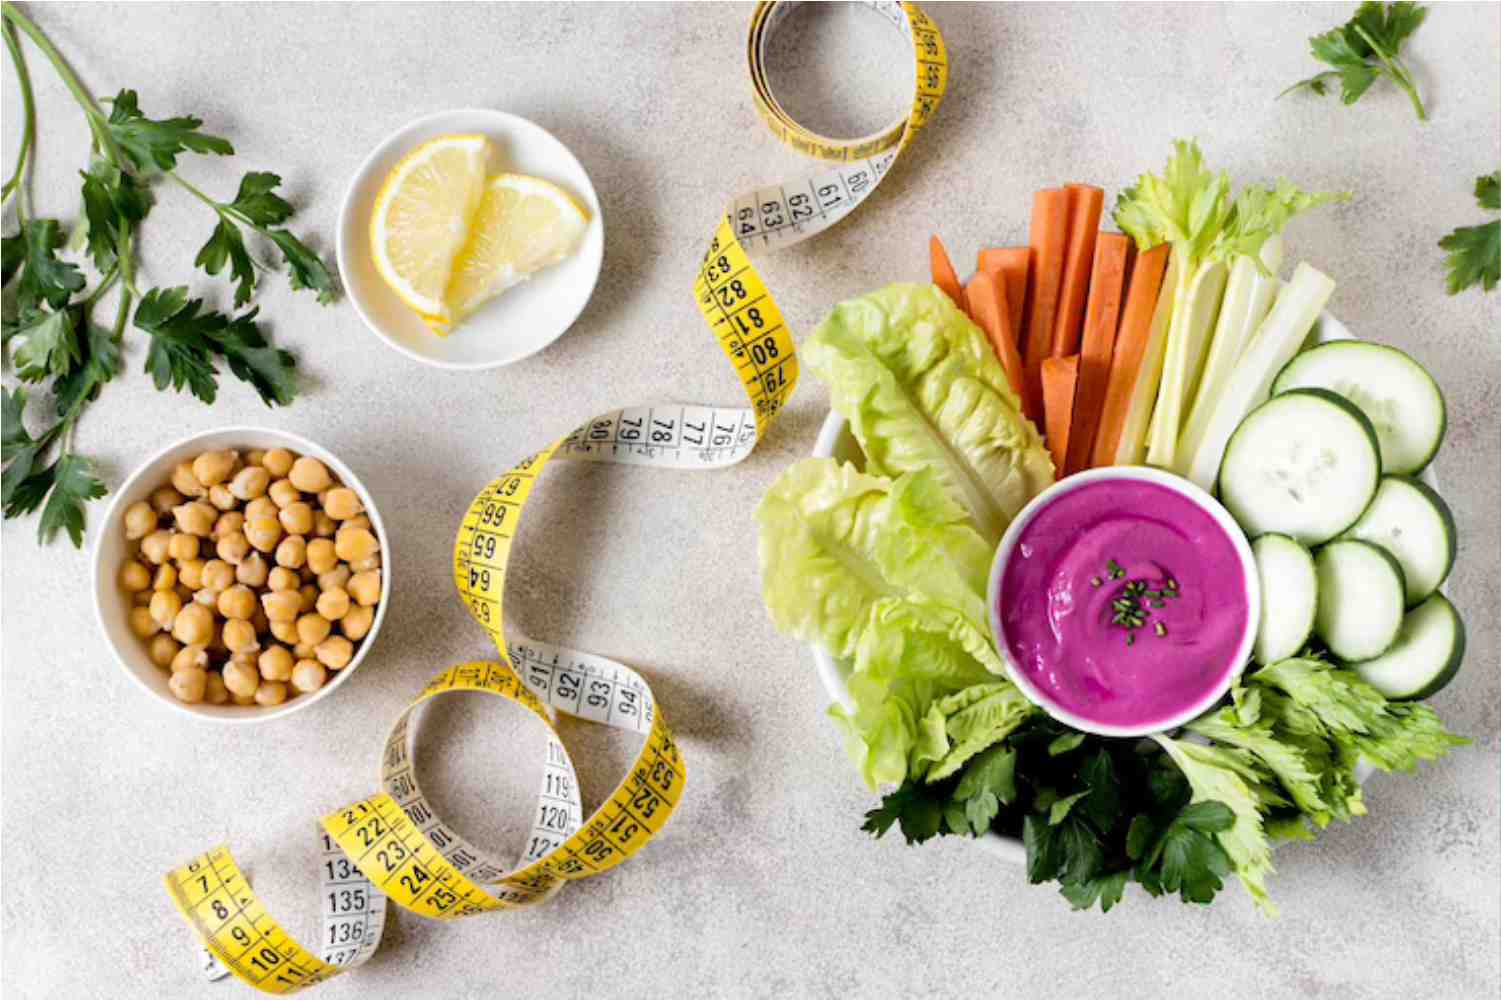 Lebensmittel zur Fettverbrennung und Ernährungsberatung: Wählen Sie die richtigen Lebensmittel, um die Fettreserven zu reduzieren